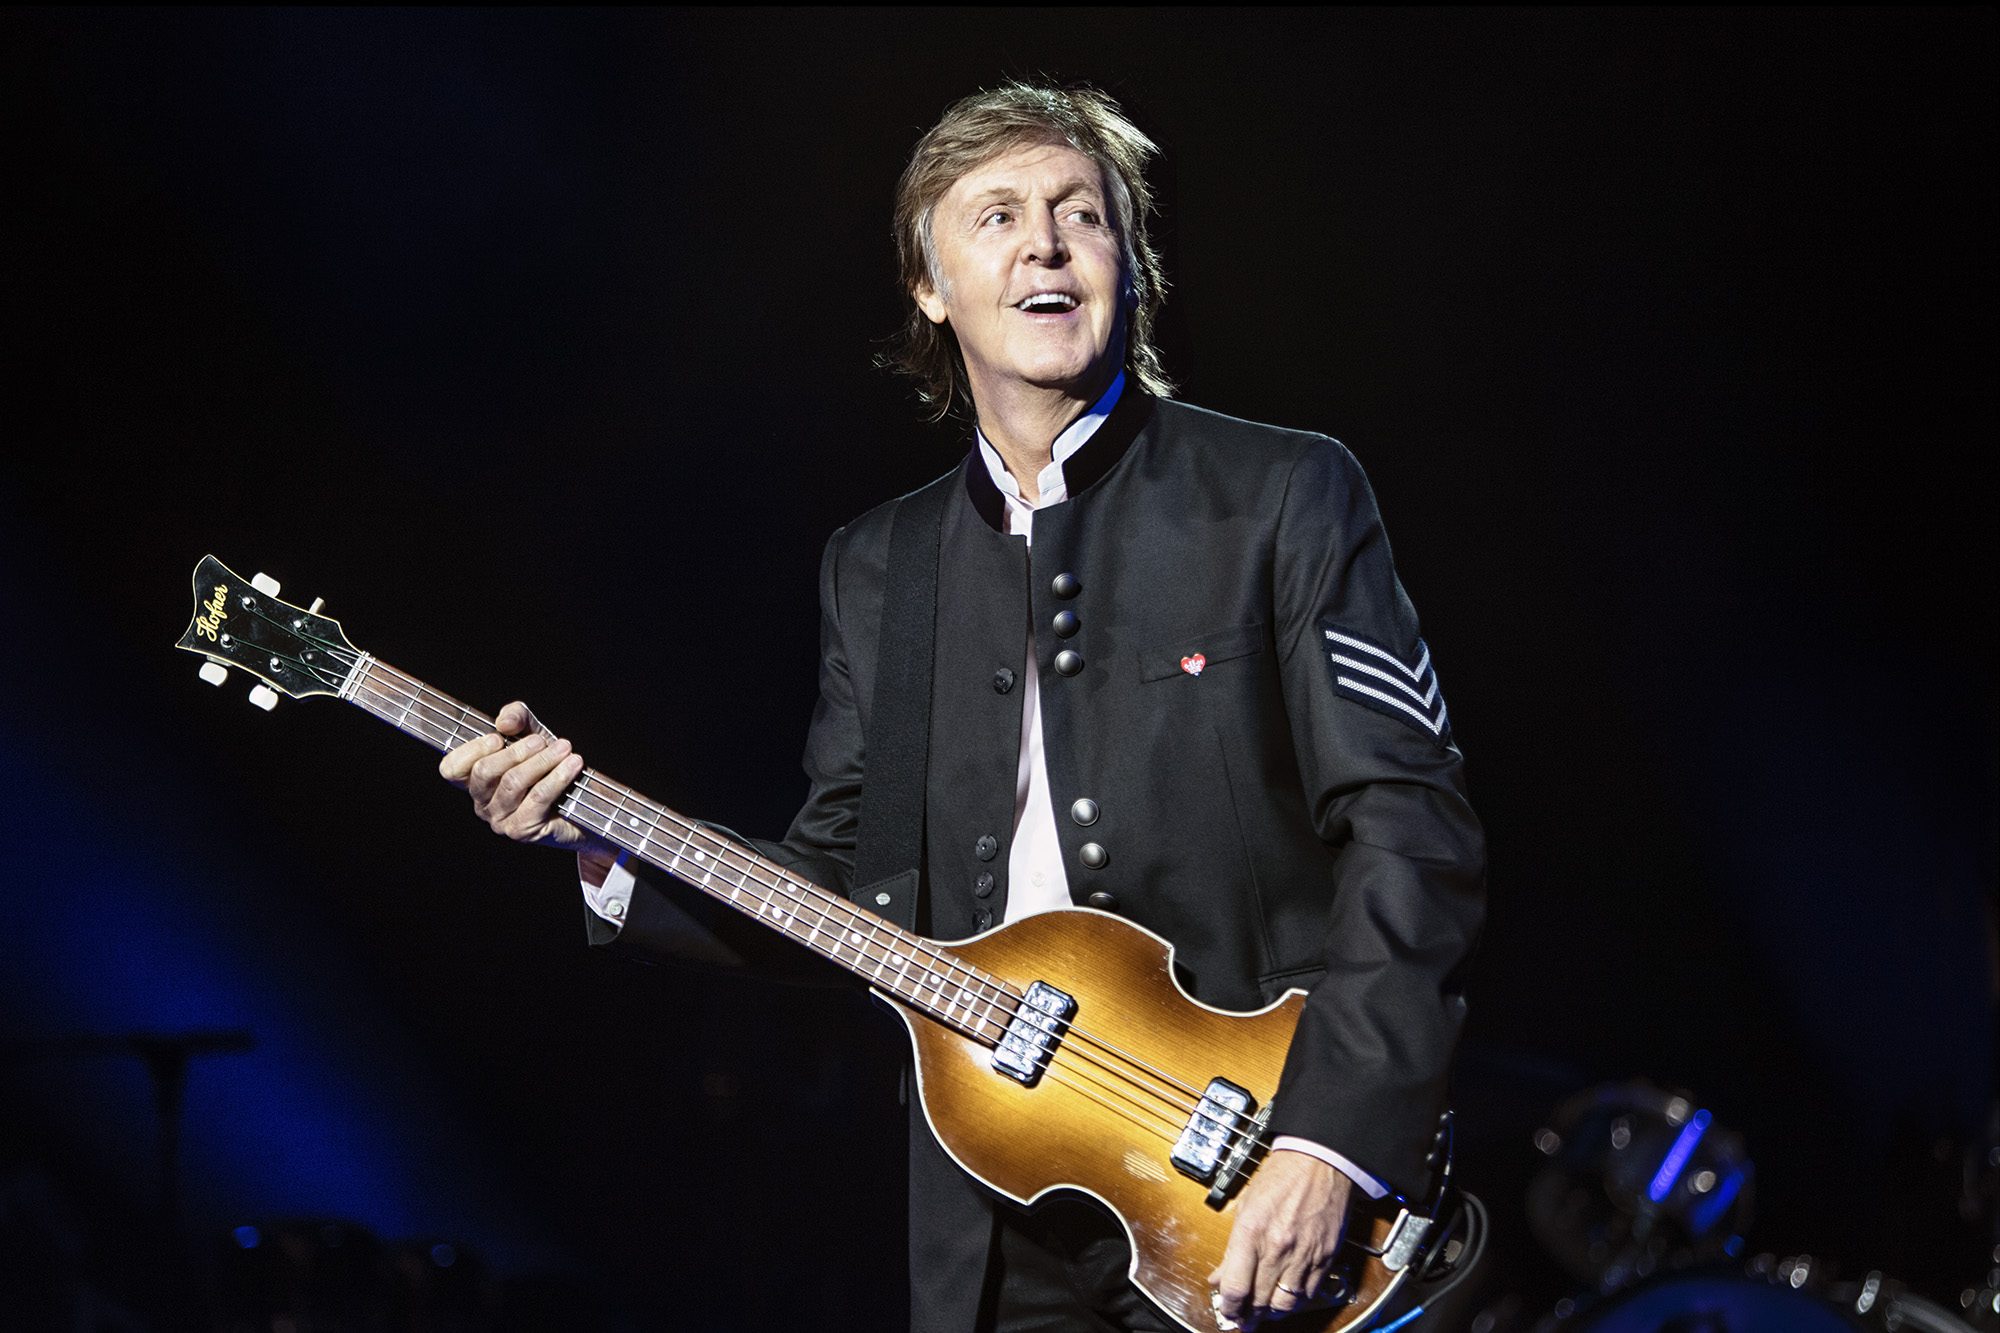 Un tesoro oculto: Paul McCartney podría lanzar un disco de outtakes